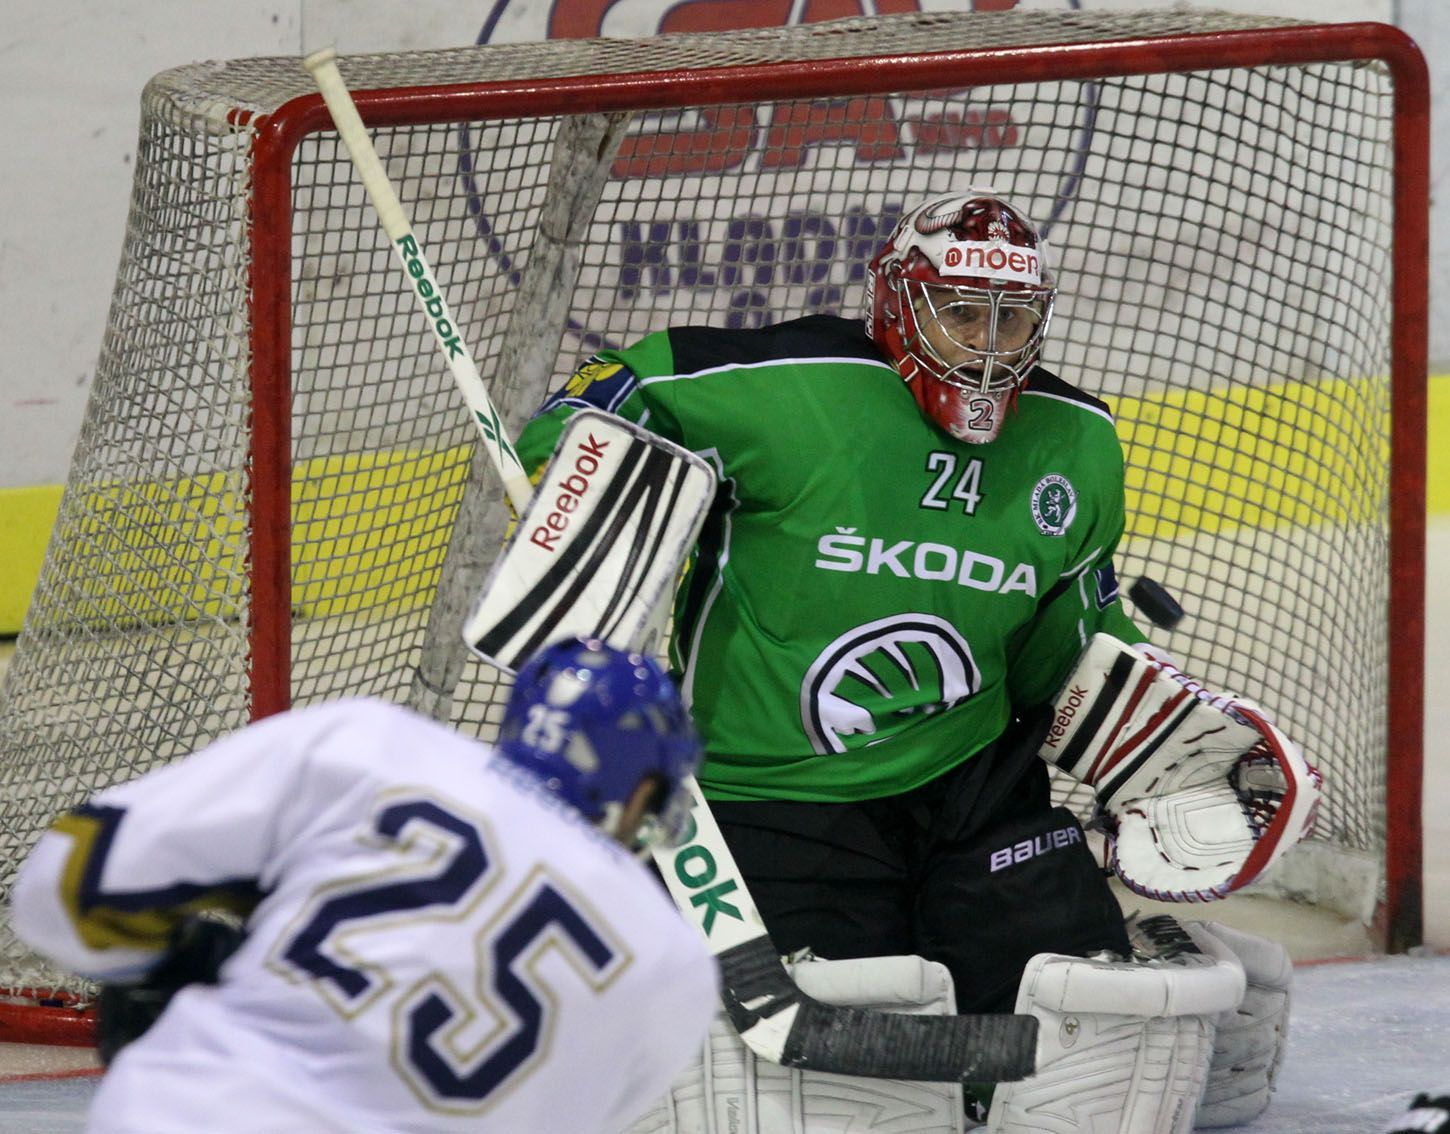 Mladoboleslavský hokejový brankář Vlastimil Lakosil sleduje střelu kladenského Marka Hovorky v přípravném utkání před sezónou 2012/13.